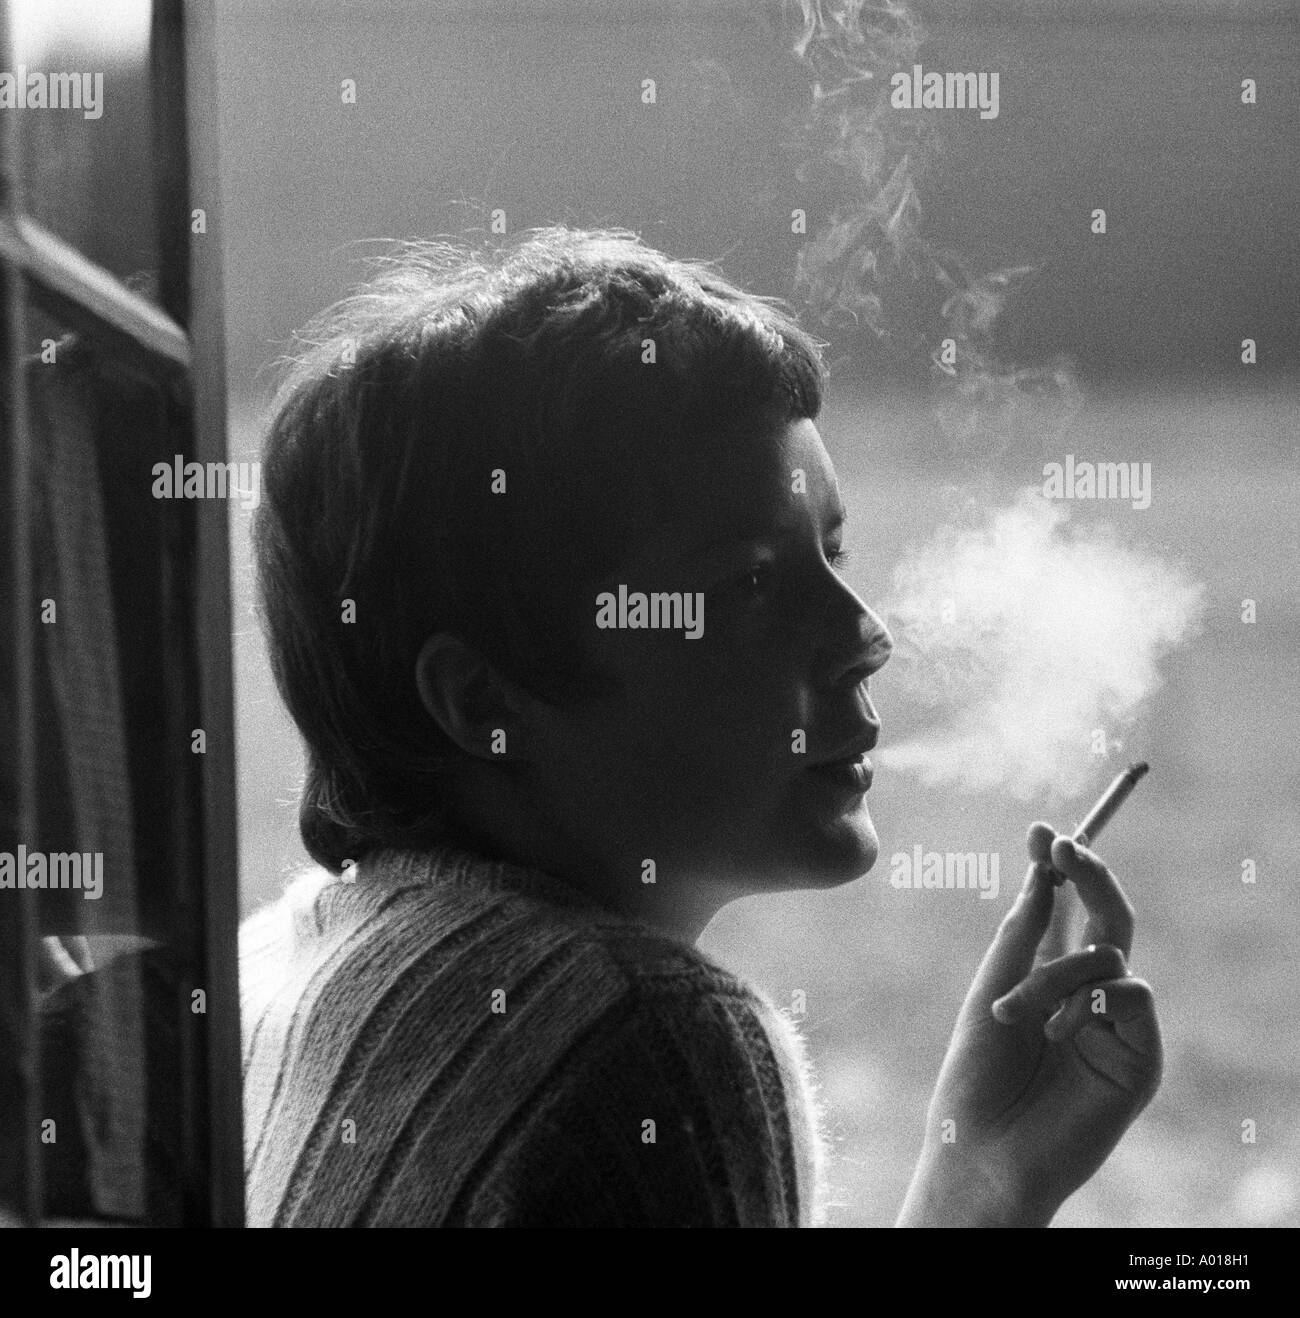 Gesundheit, junges Mädchen, junge Frau raucht eine Zigarette, Rauch, wieder Licht, b&w, schwarz / weiß, schwarze & weiß Fotografie Stockfoto